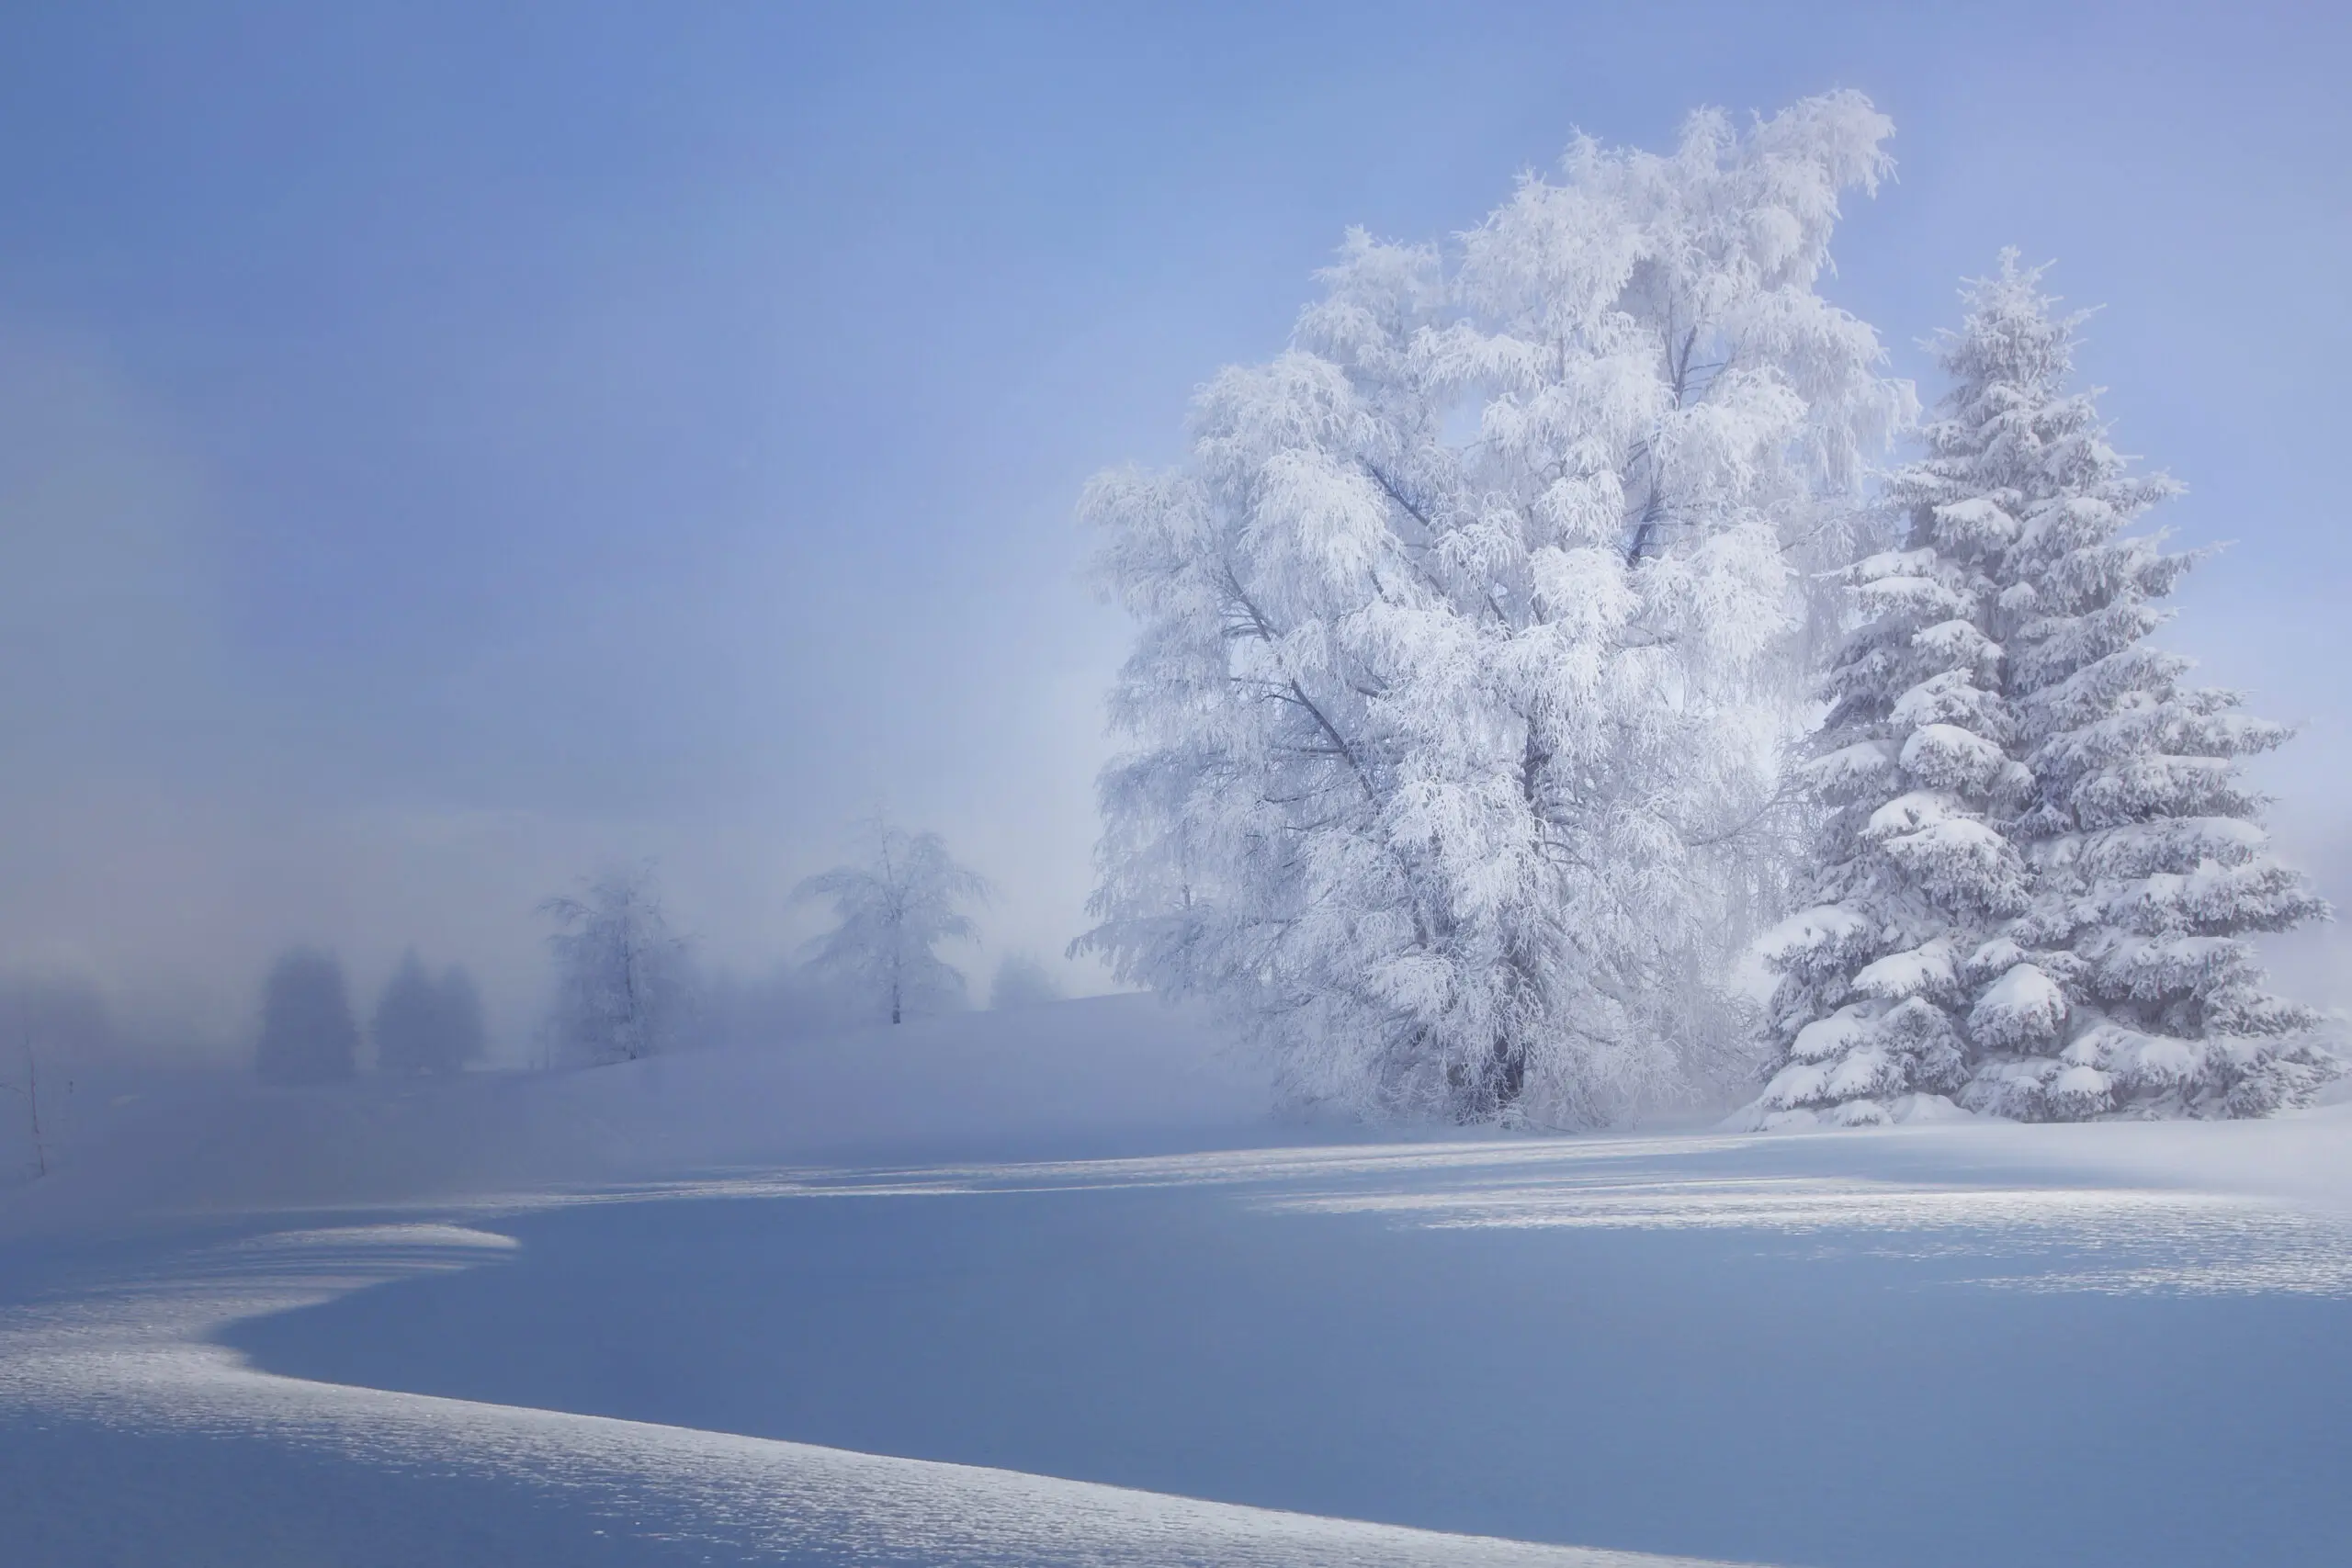 Wandbild (6353) crispy morning by VeroniqueS,1x.com präsentiert: Landschaften,Wasser,Natur,Bäume,Schnee und Eis